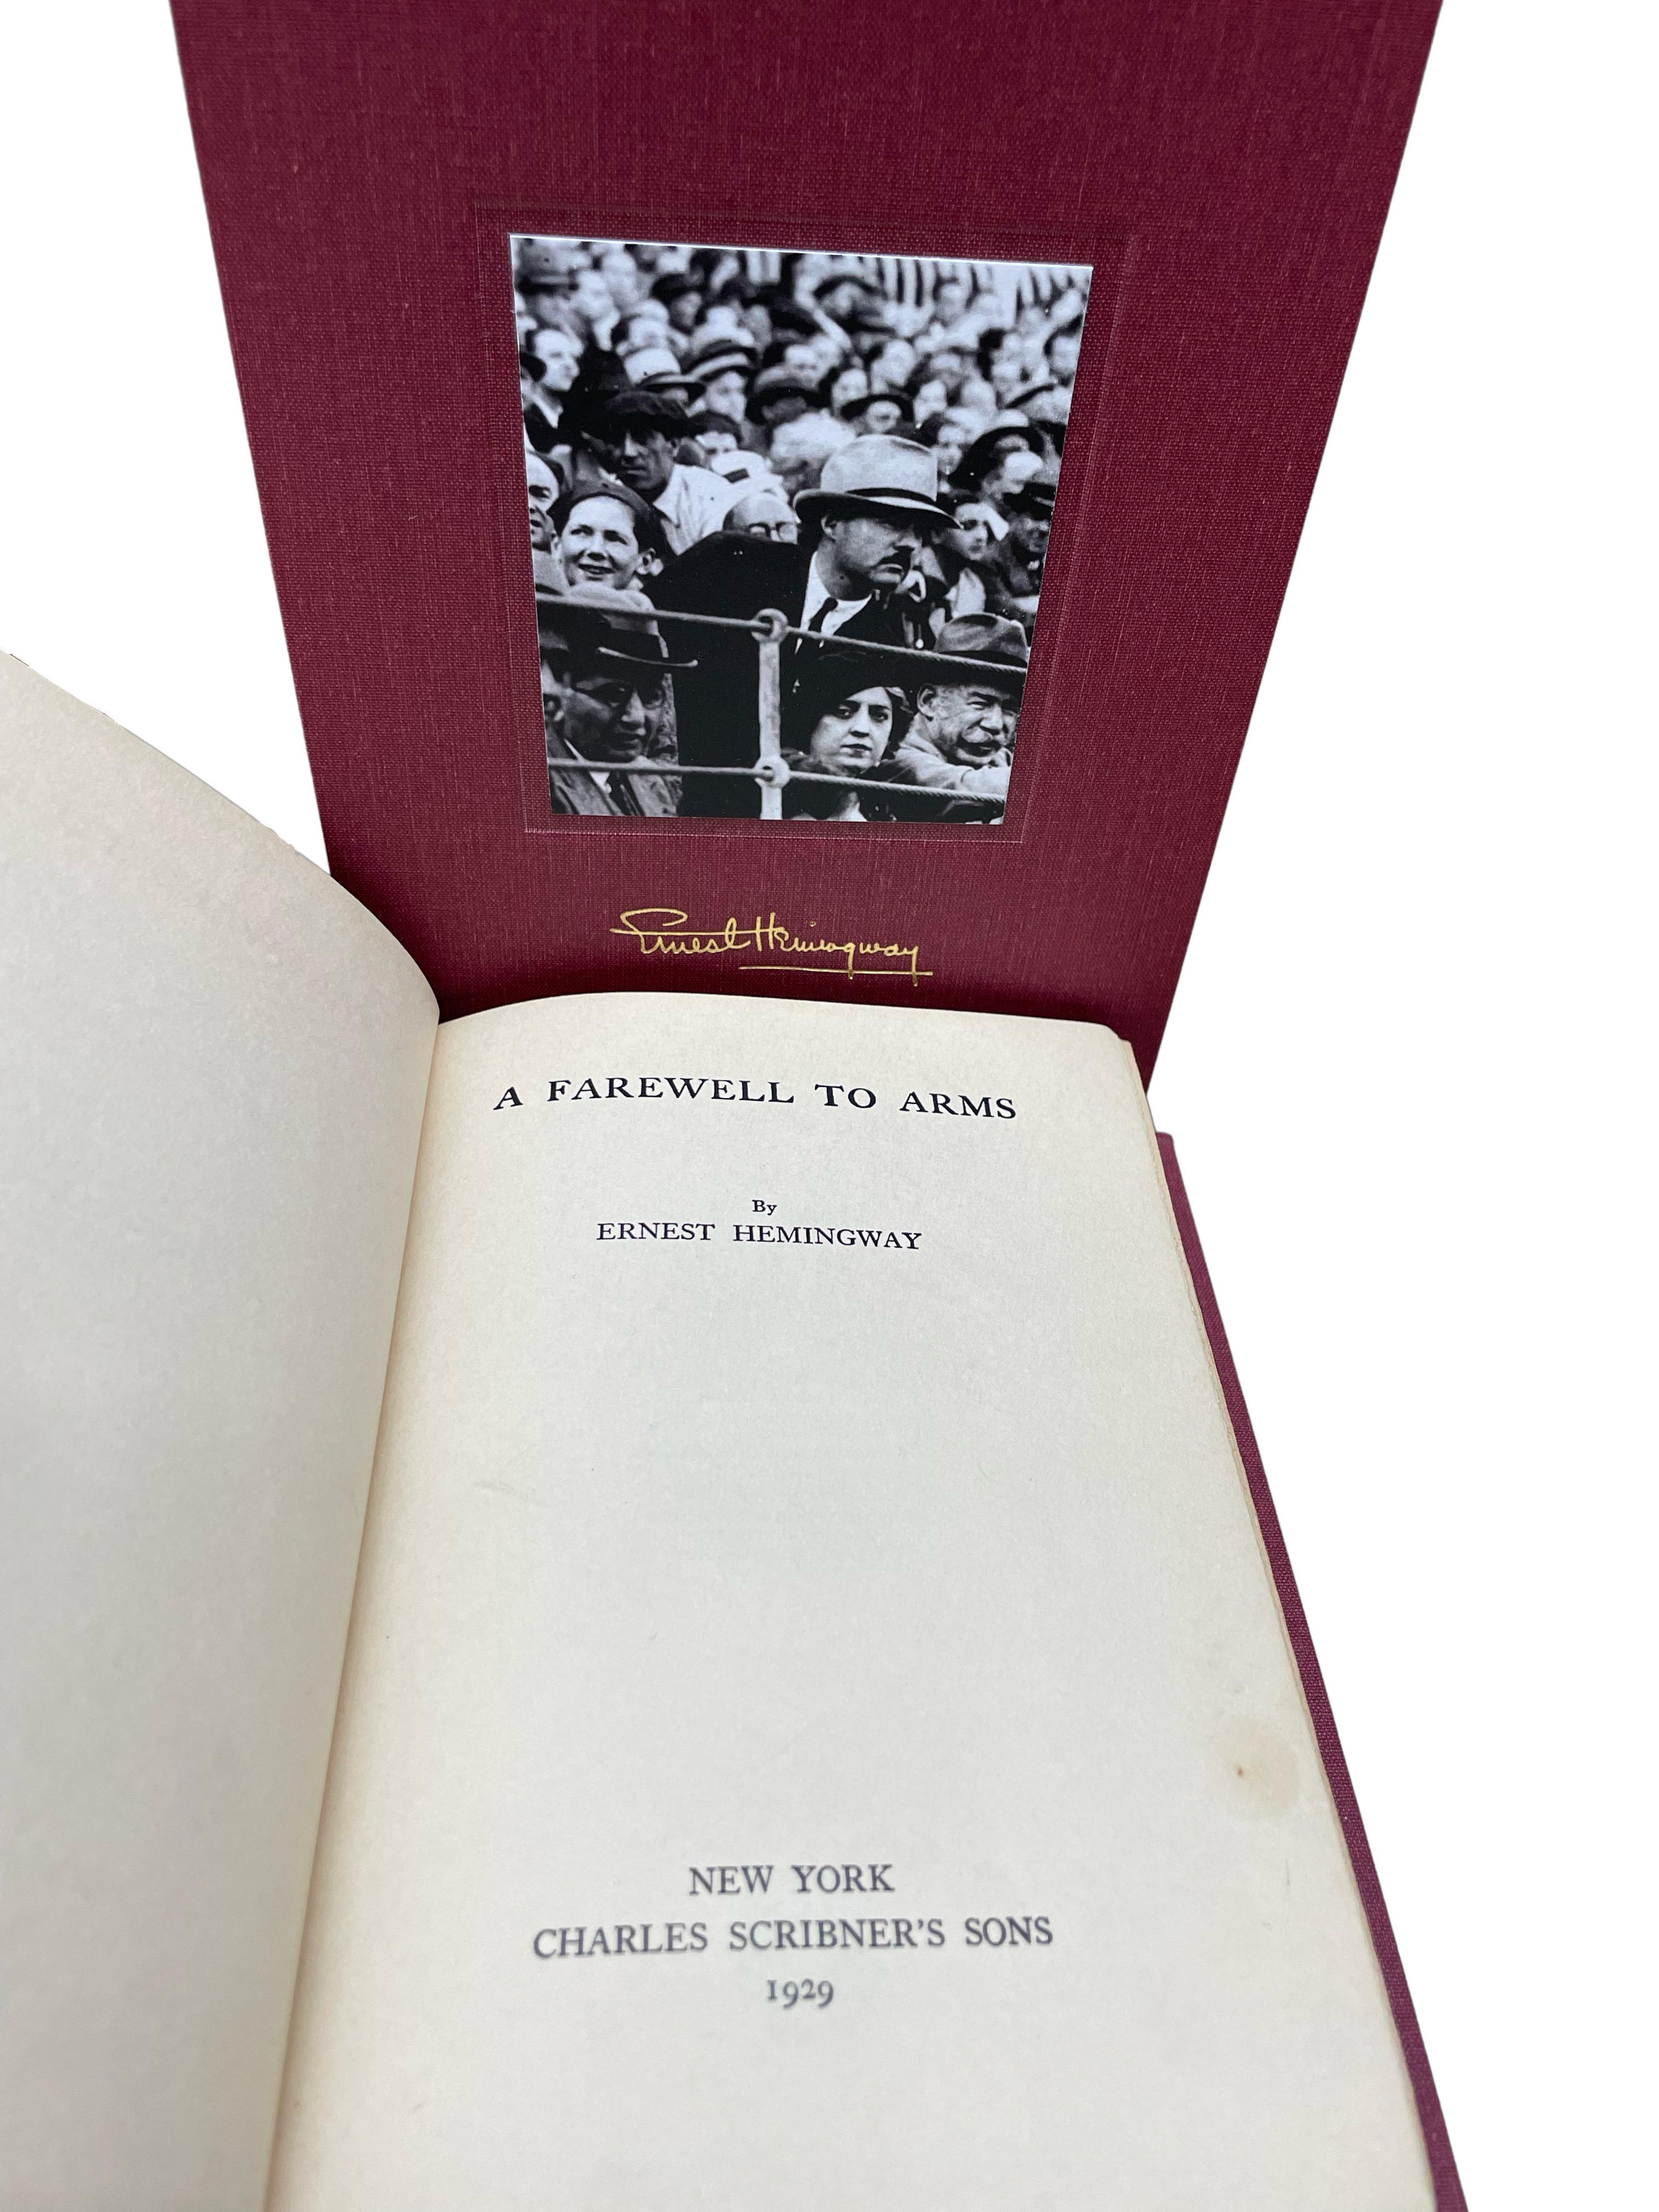 Hemingway, Ernest. A Farewell to Arms. New York: Charles Scribner's Sons, 1929. Erste Ausgabe, späterer Druck. Octavo, Rebound in Viertel Leder und Stoff-Boards mit vergoldeten Titeln und Werkzeug, um den Rücken. In einem neuen archivtauglichen